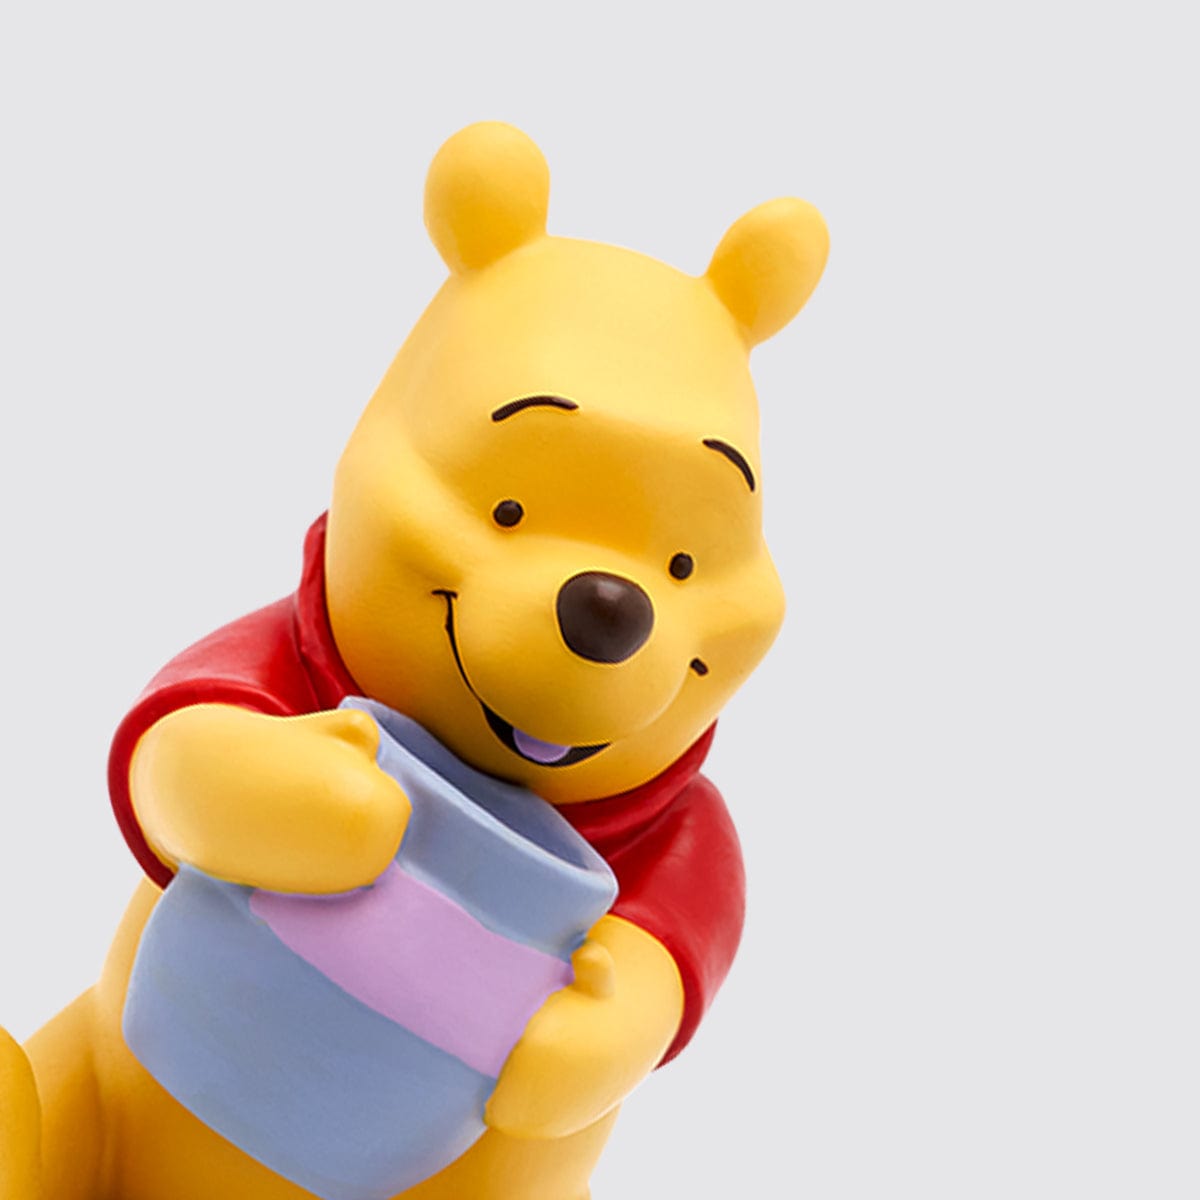 tonies® I Disney Winnie the Pooh Tonie I Buy now